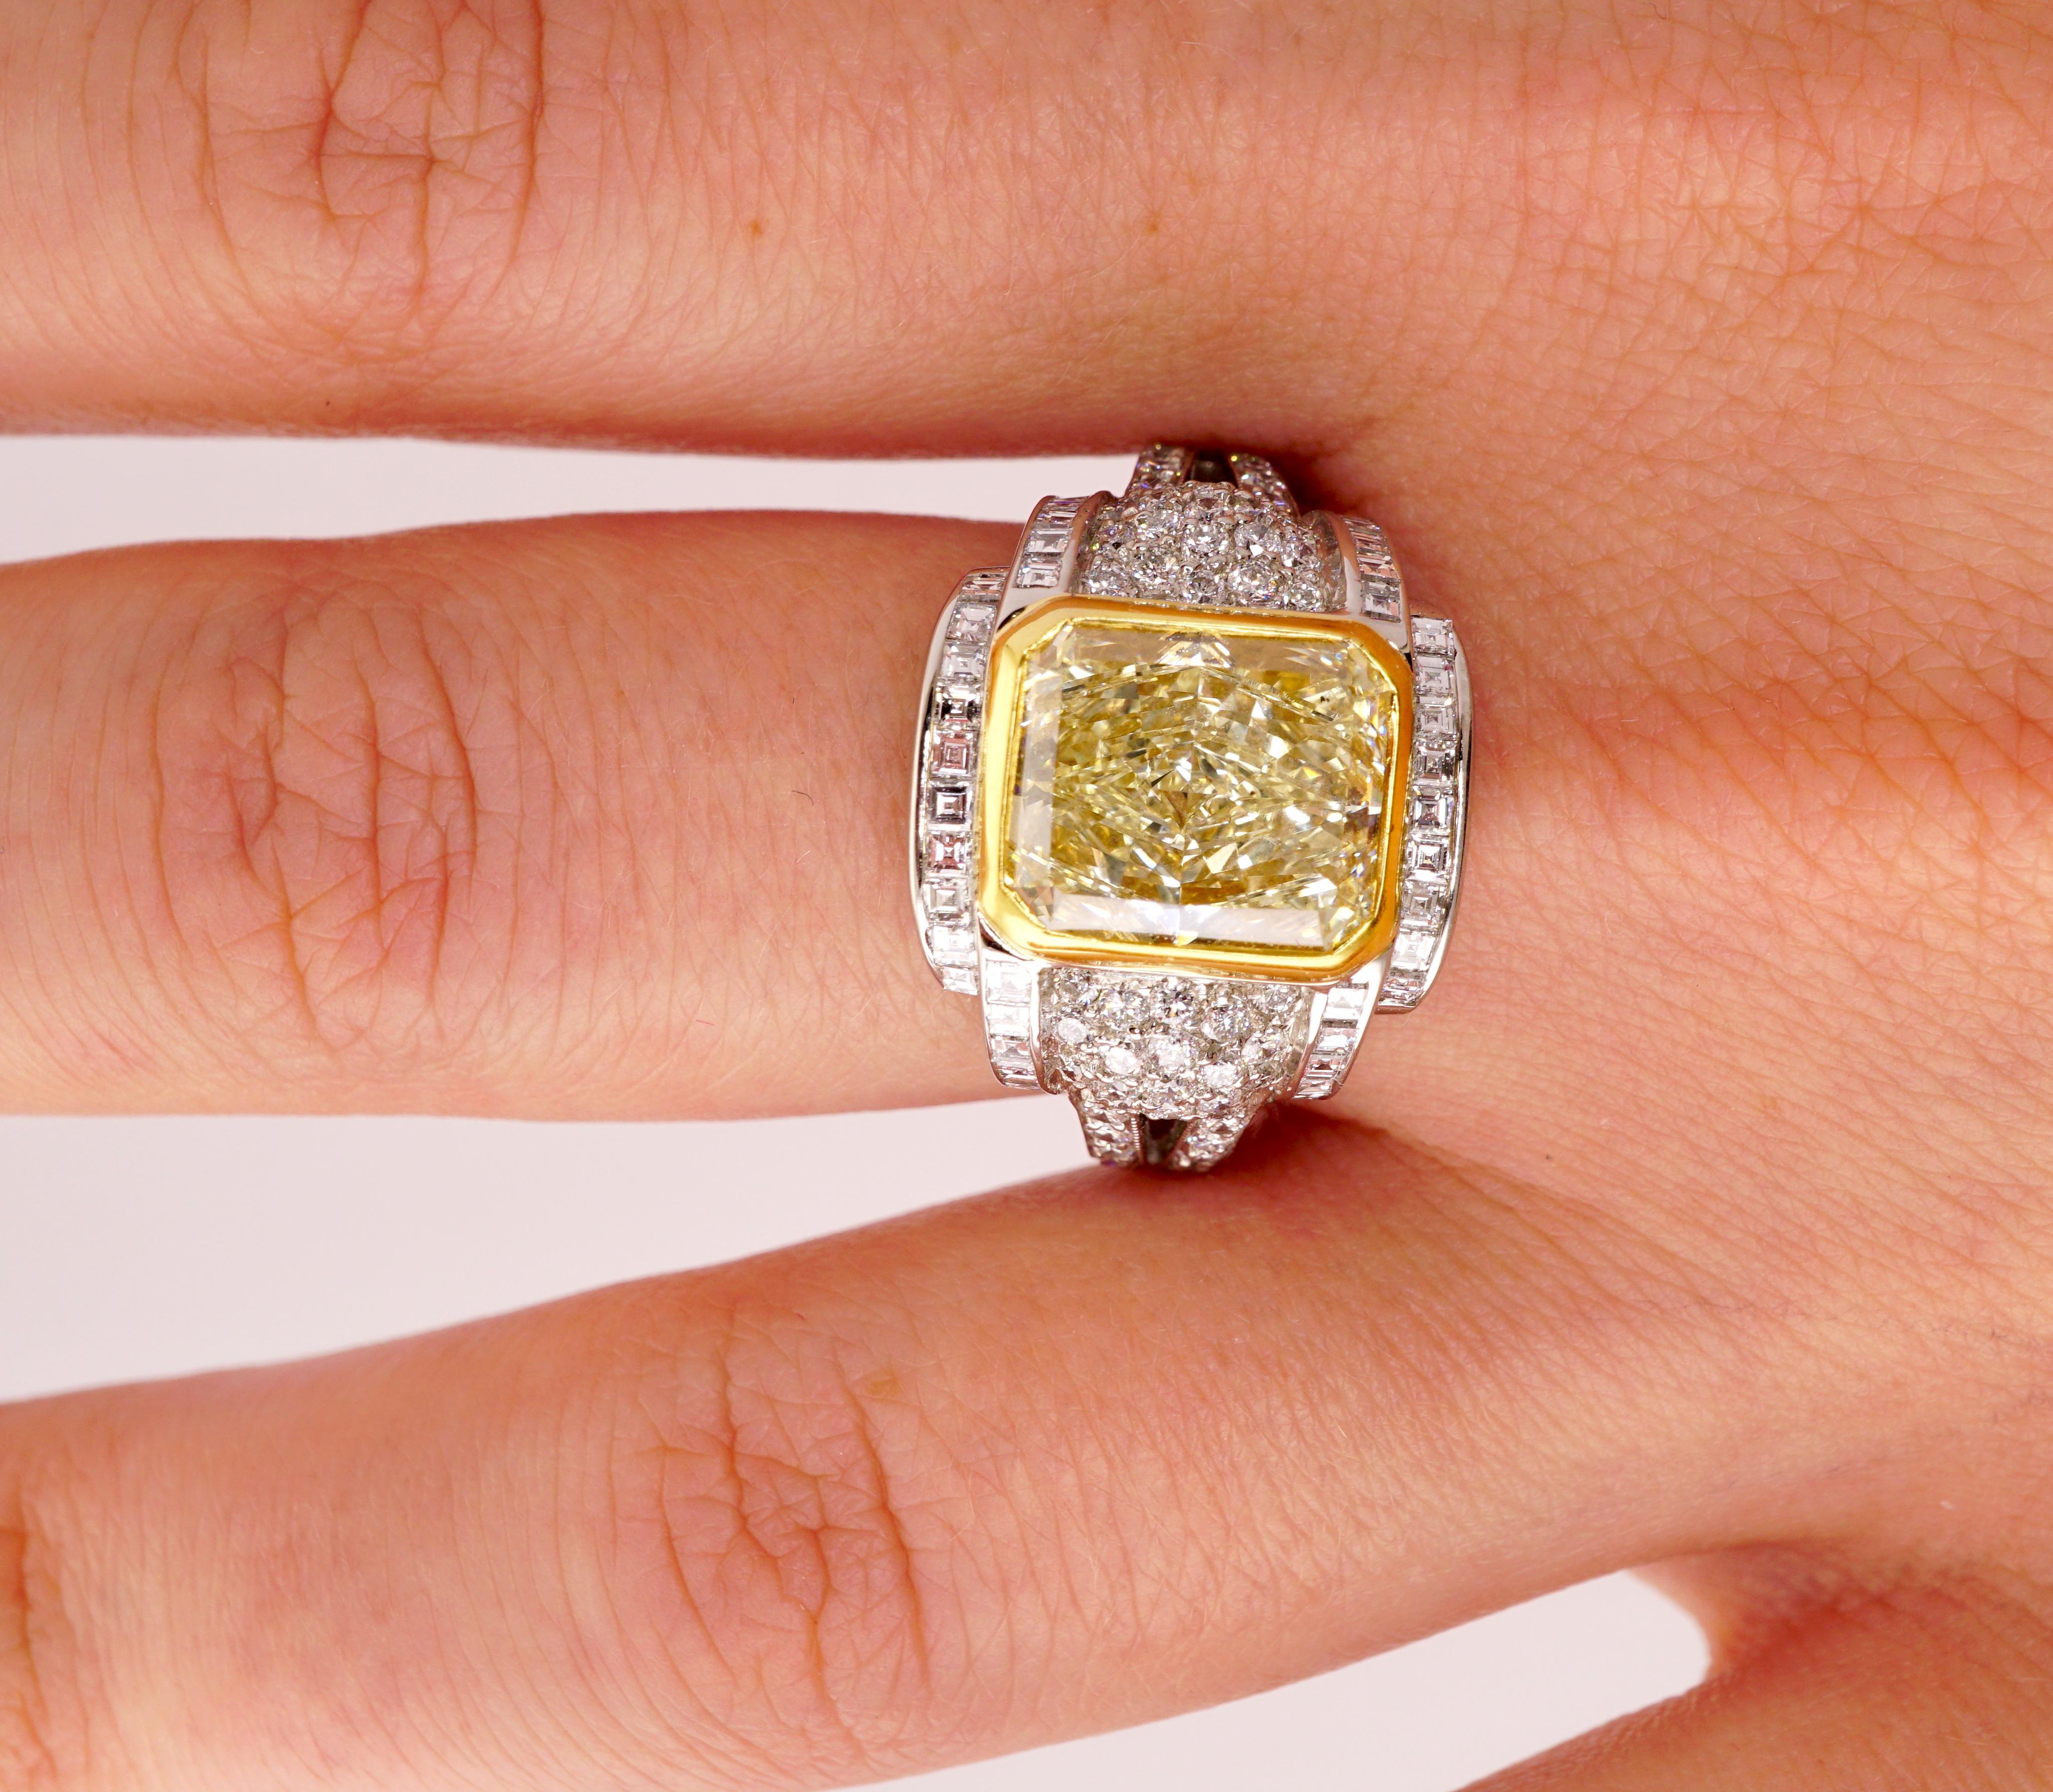 Gelber Diamantring mit EGL-Zertifikat, Nr. 400148819D. Mittelstein: 3,87ct Diamant im Radiant-Schliff Fancy Yellow VS2, 9,8 x 8,3 x 4,94 mm. Seitensteine: Diamanten im Carre- und Brillantrundschliff: 1,35ct F-G Vs2-SI1. Karatgewicht insgesamt: